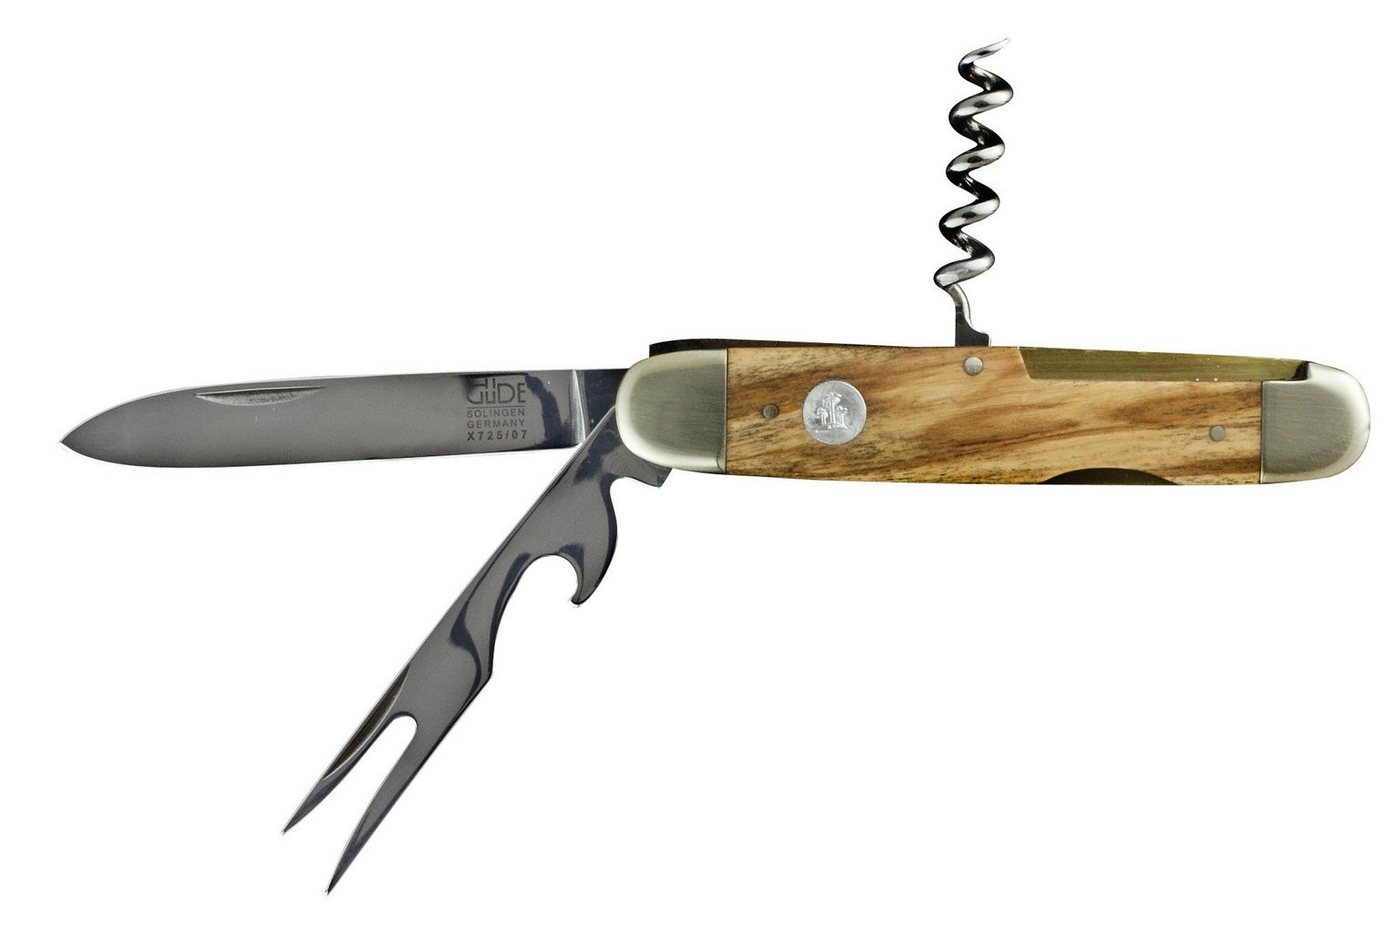 Güde Messer Solingen Taschenmesser Taschenmesser mit Gabel, Serie Alpha Olive, No. X725/07 von Güde Messer Solingen